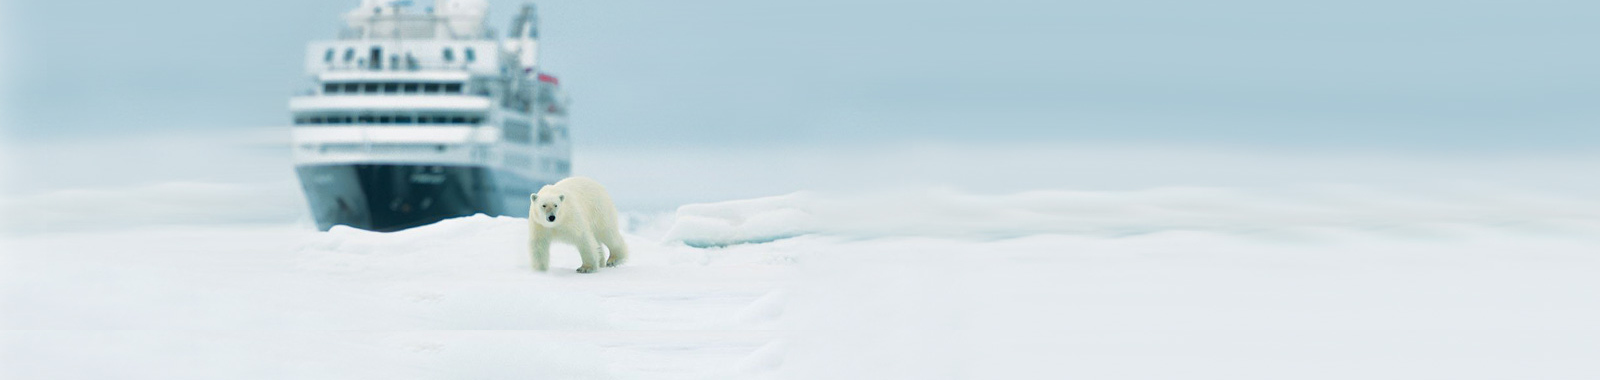 Polar Bear - AECO